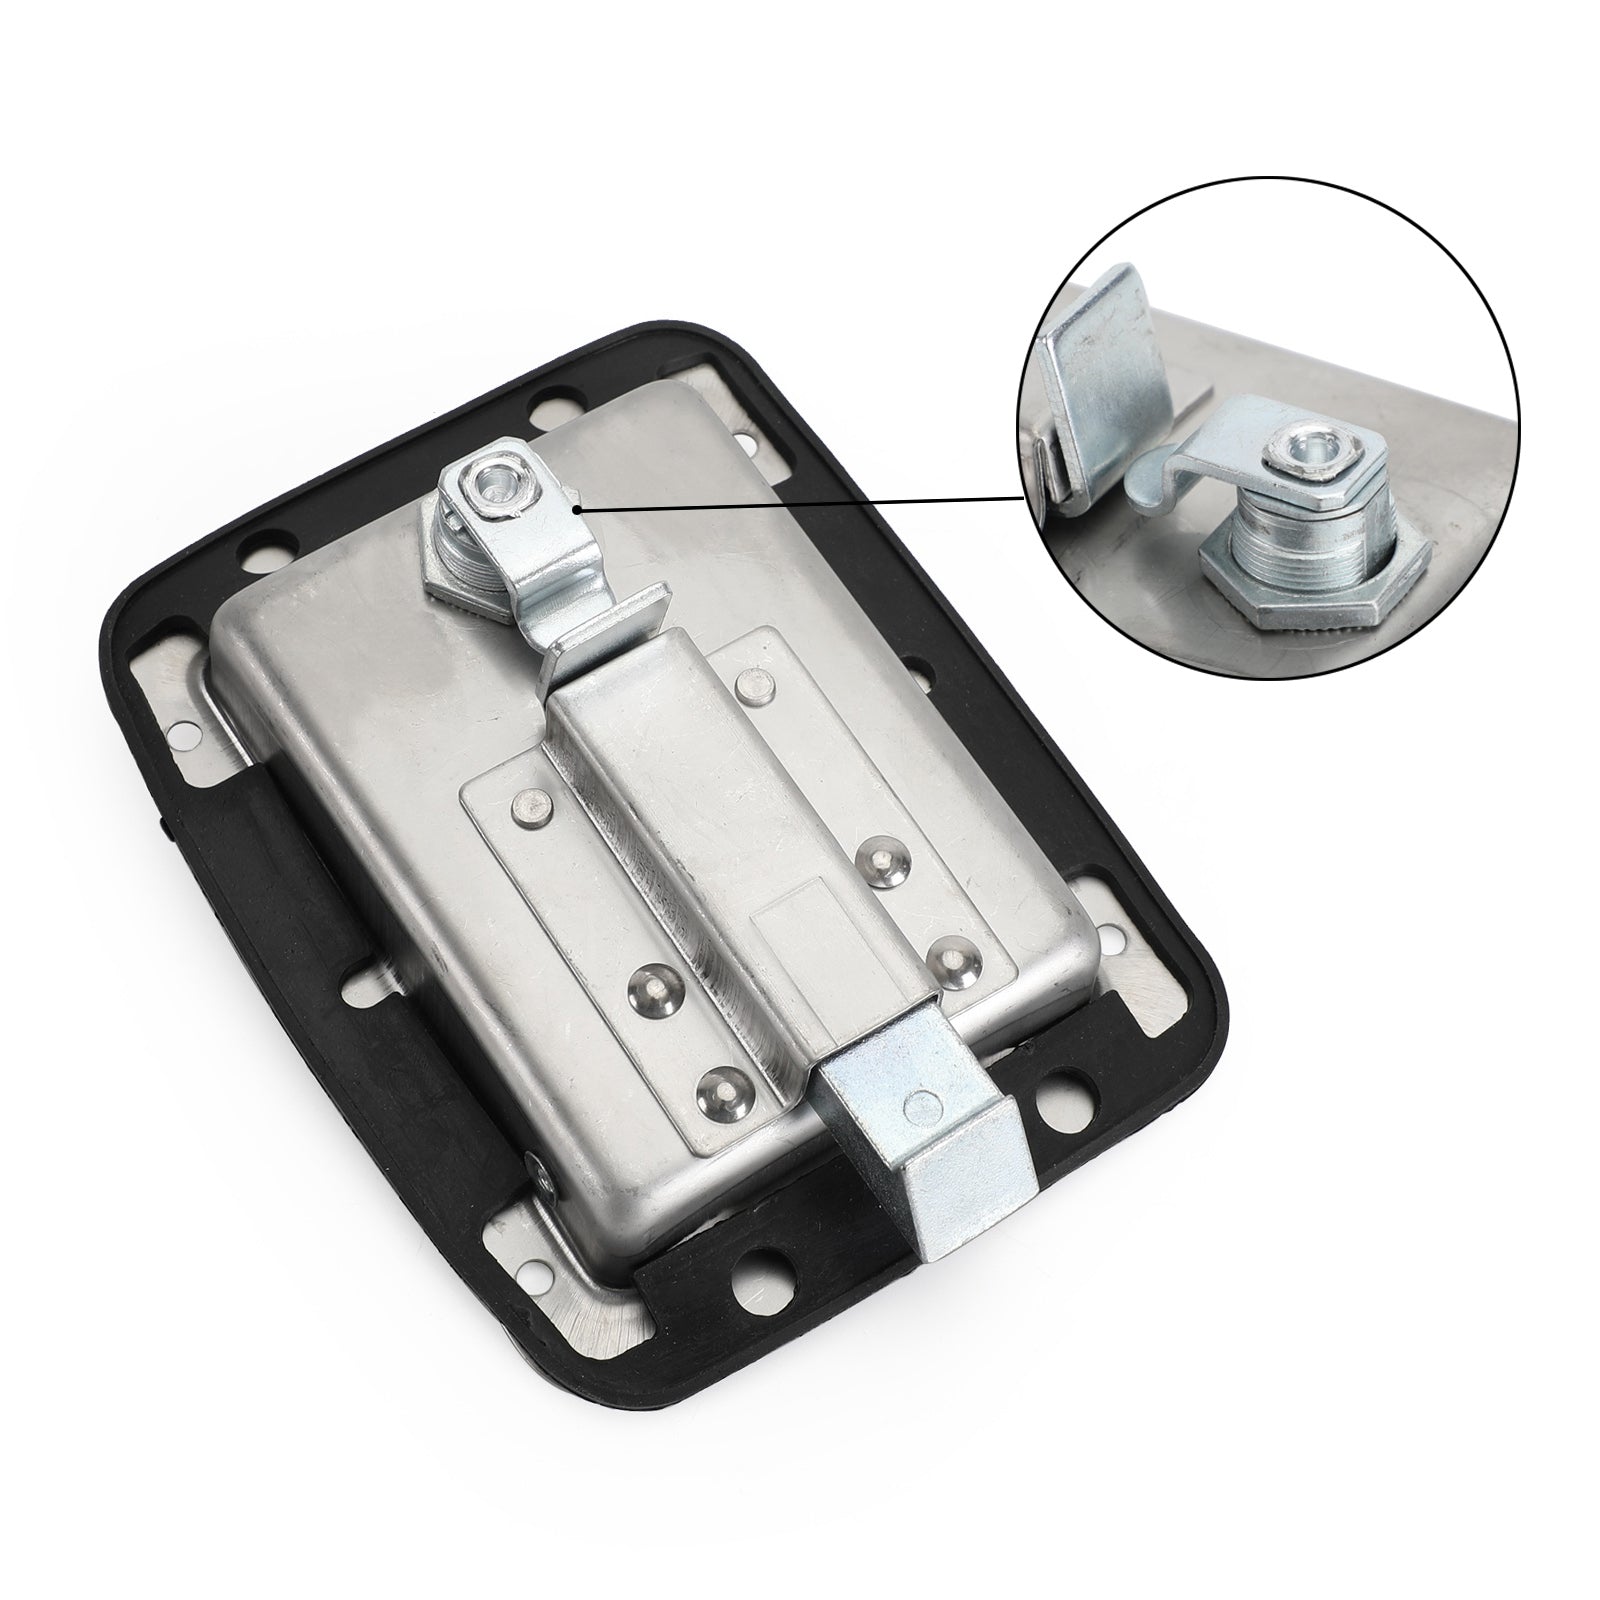 4×Stainless Steel Paddle Latch 5.5"*4.25" & Keys for Tool Box Lock RV Caravan